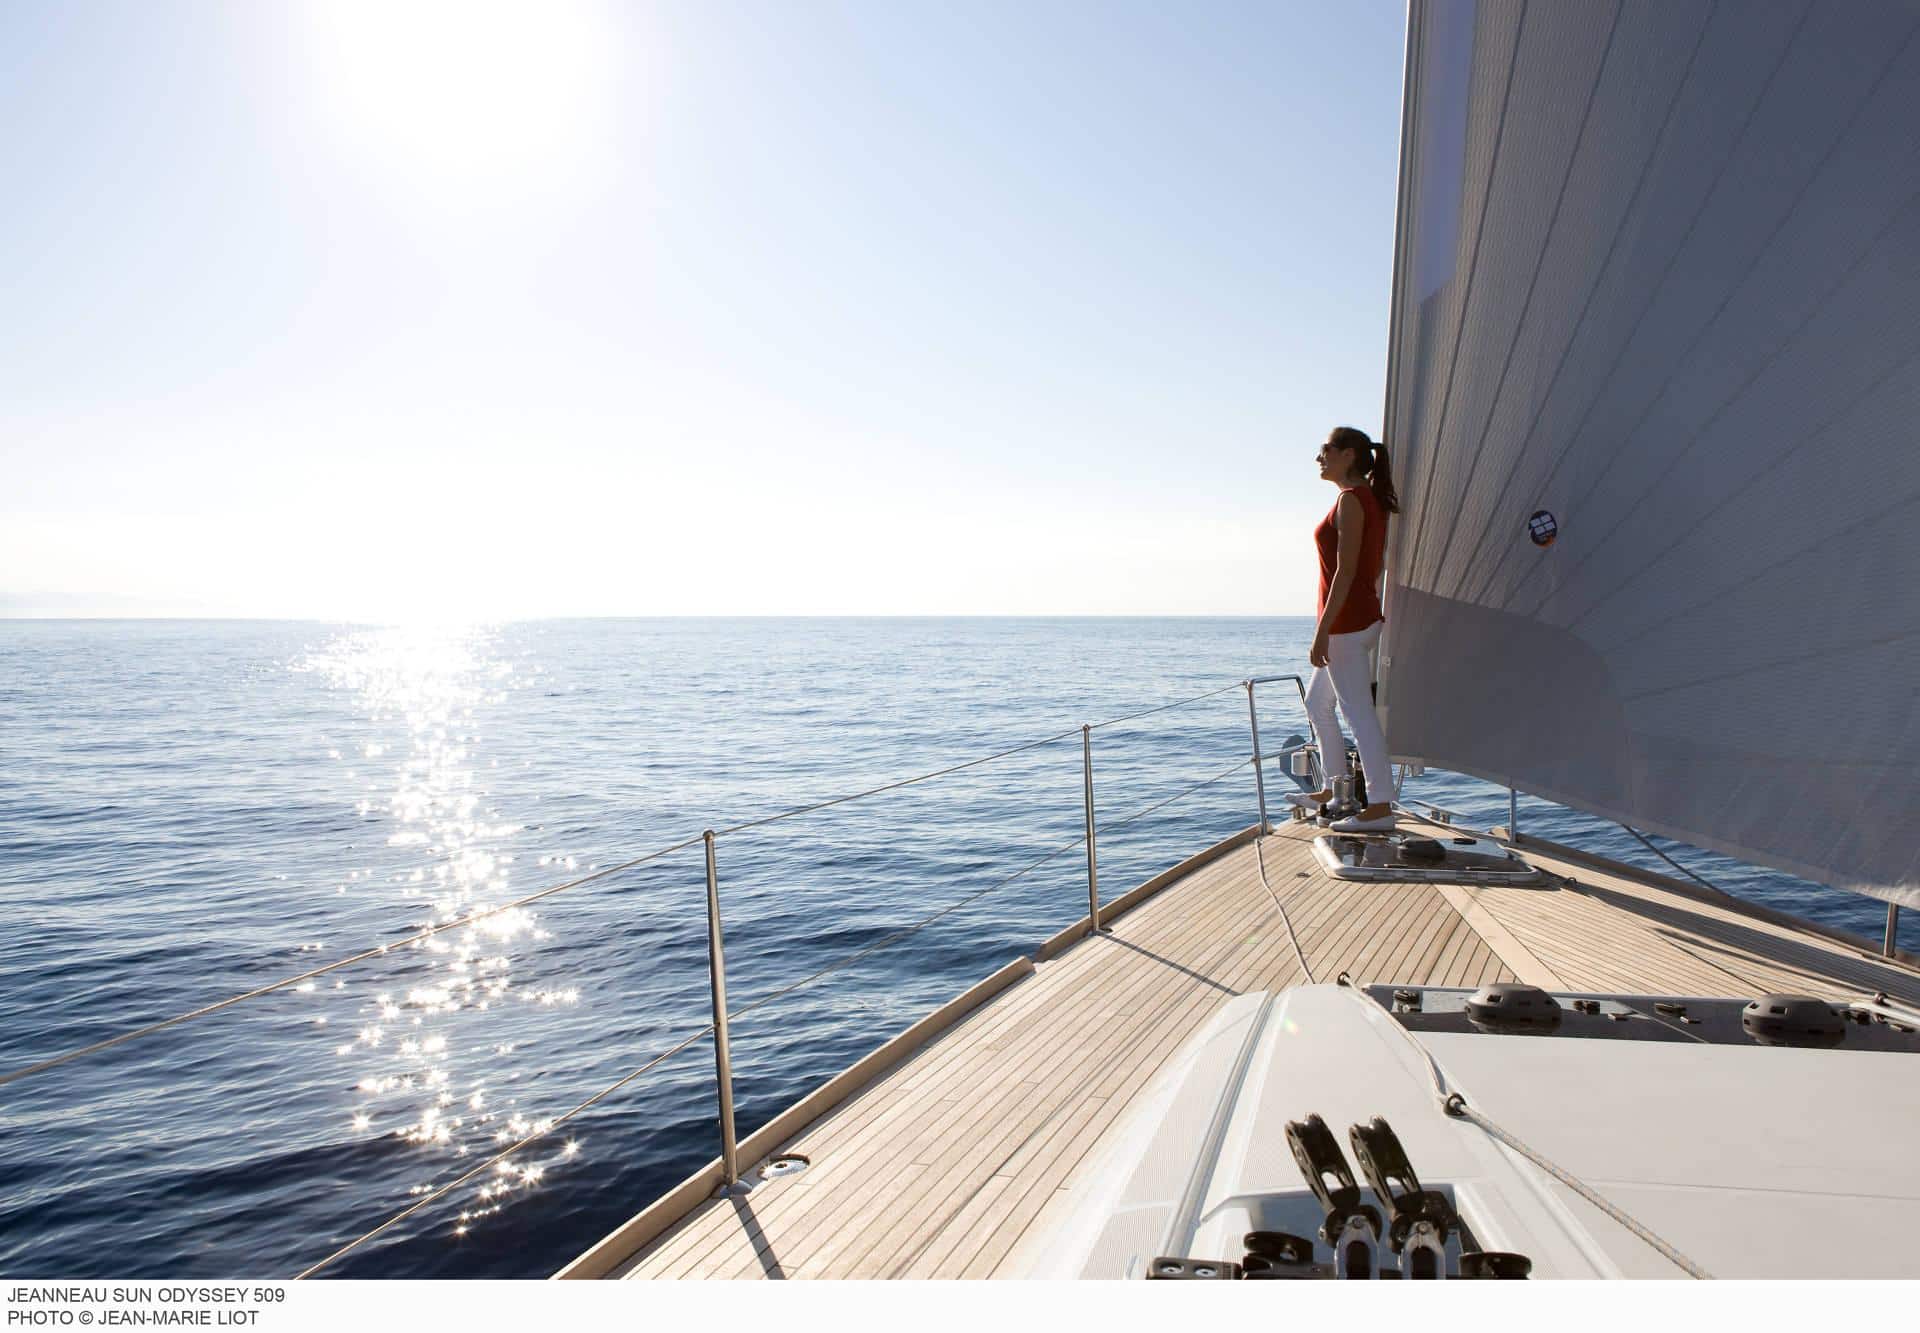 Eine Person steht am Bug einer Segelyacht und blickt auf den Ozean. Sonnenlicht glitzert auf dem Wasser und beleuchtet ein ruhiges Meer unter einem klaren blauen Himmel.